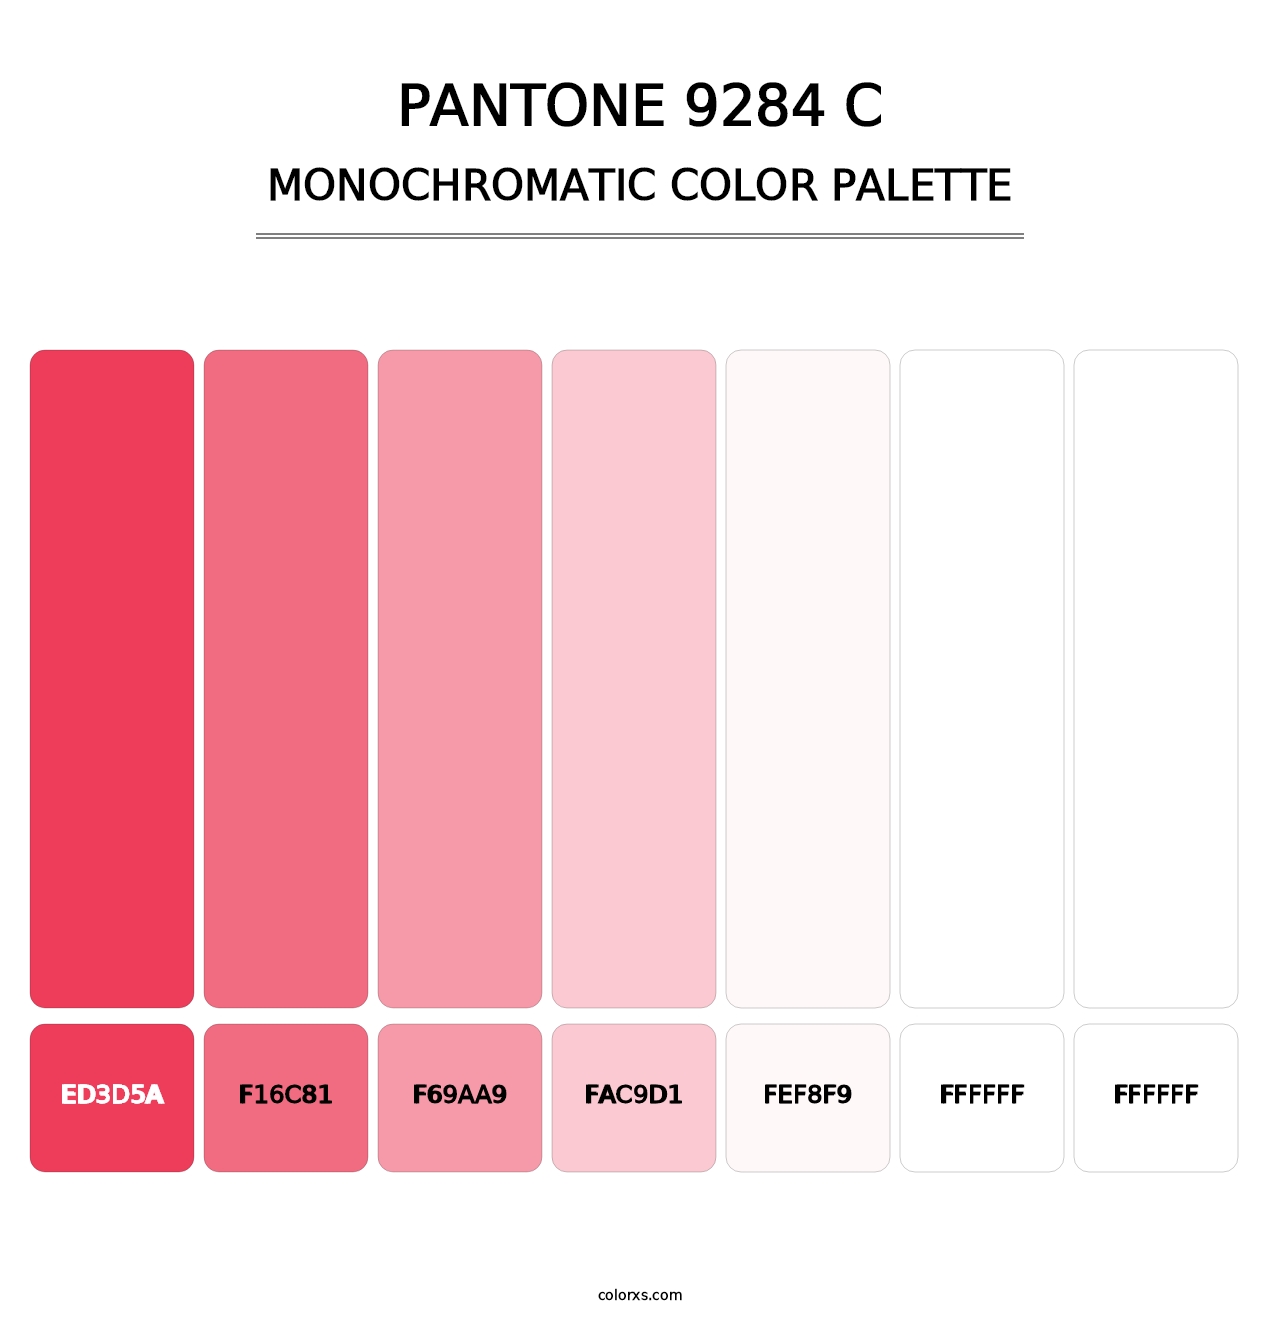 PANTONE 9284 C - Monochromatic Color Palette